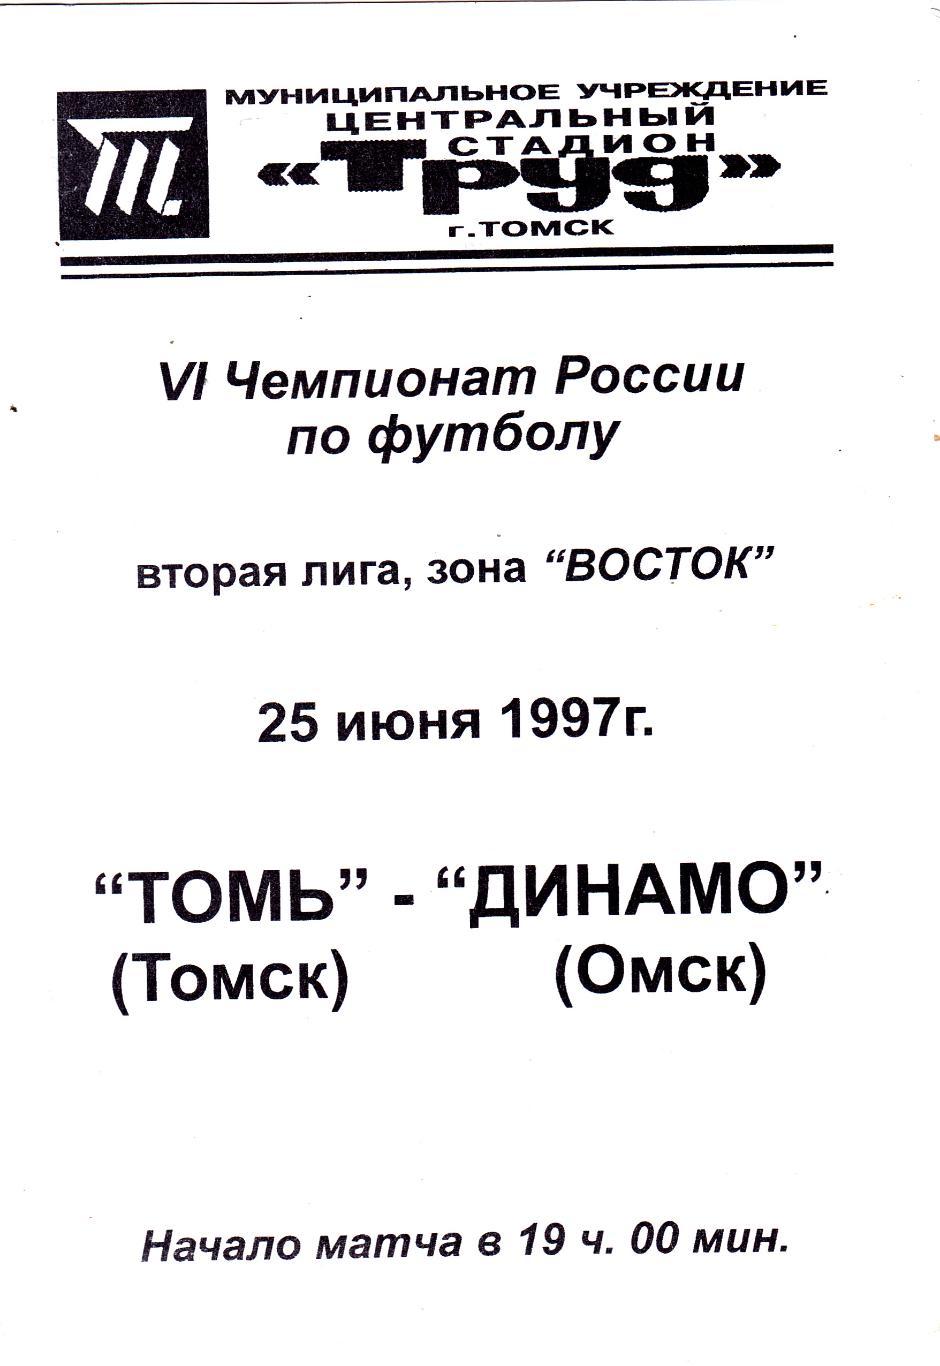 Томь (Томск) - Динамо (Омск) 25.06.1997